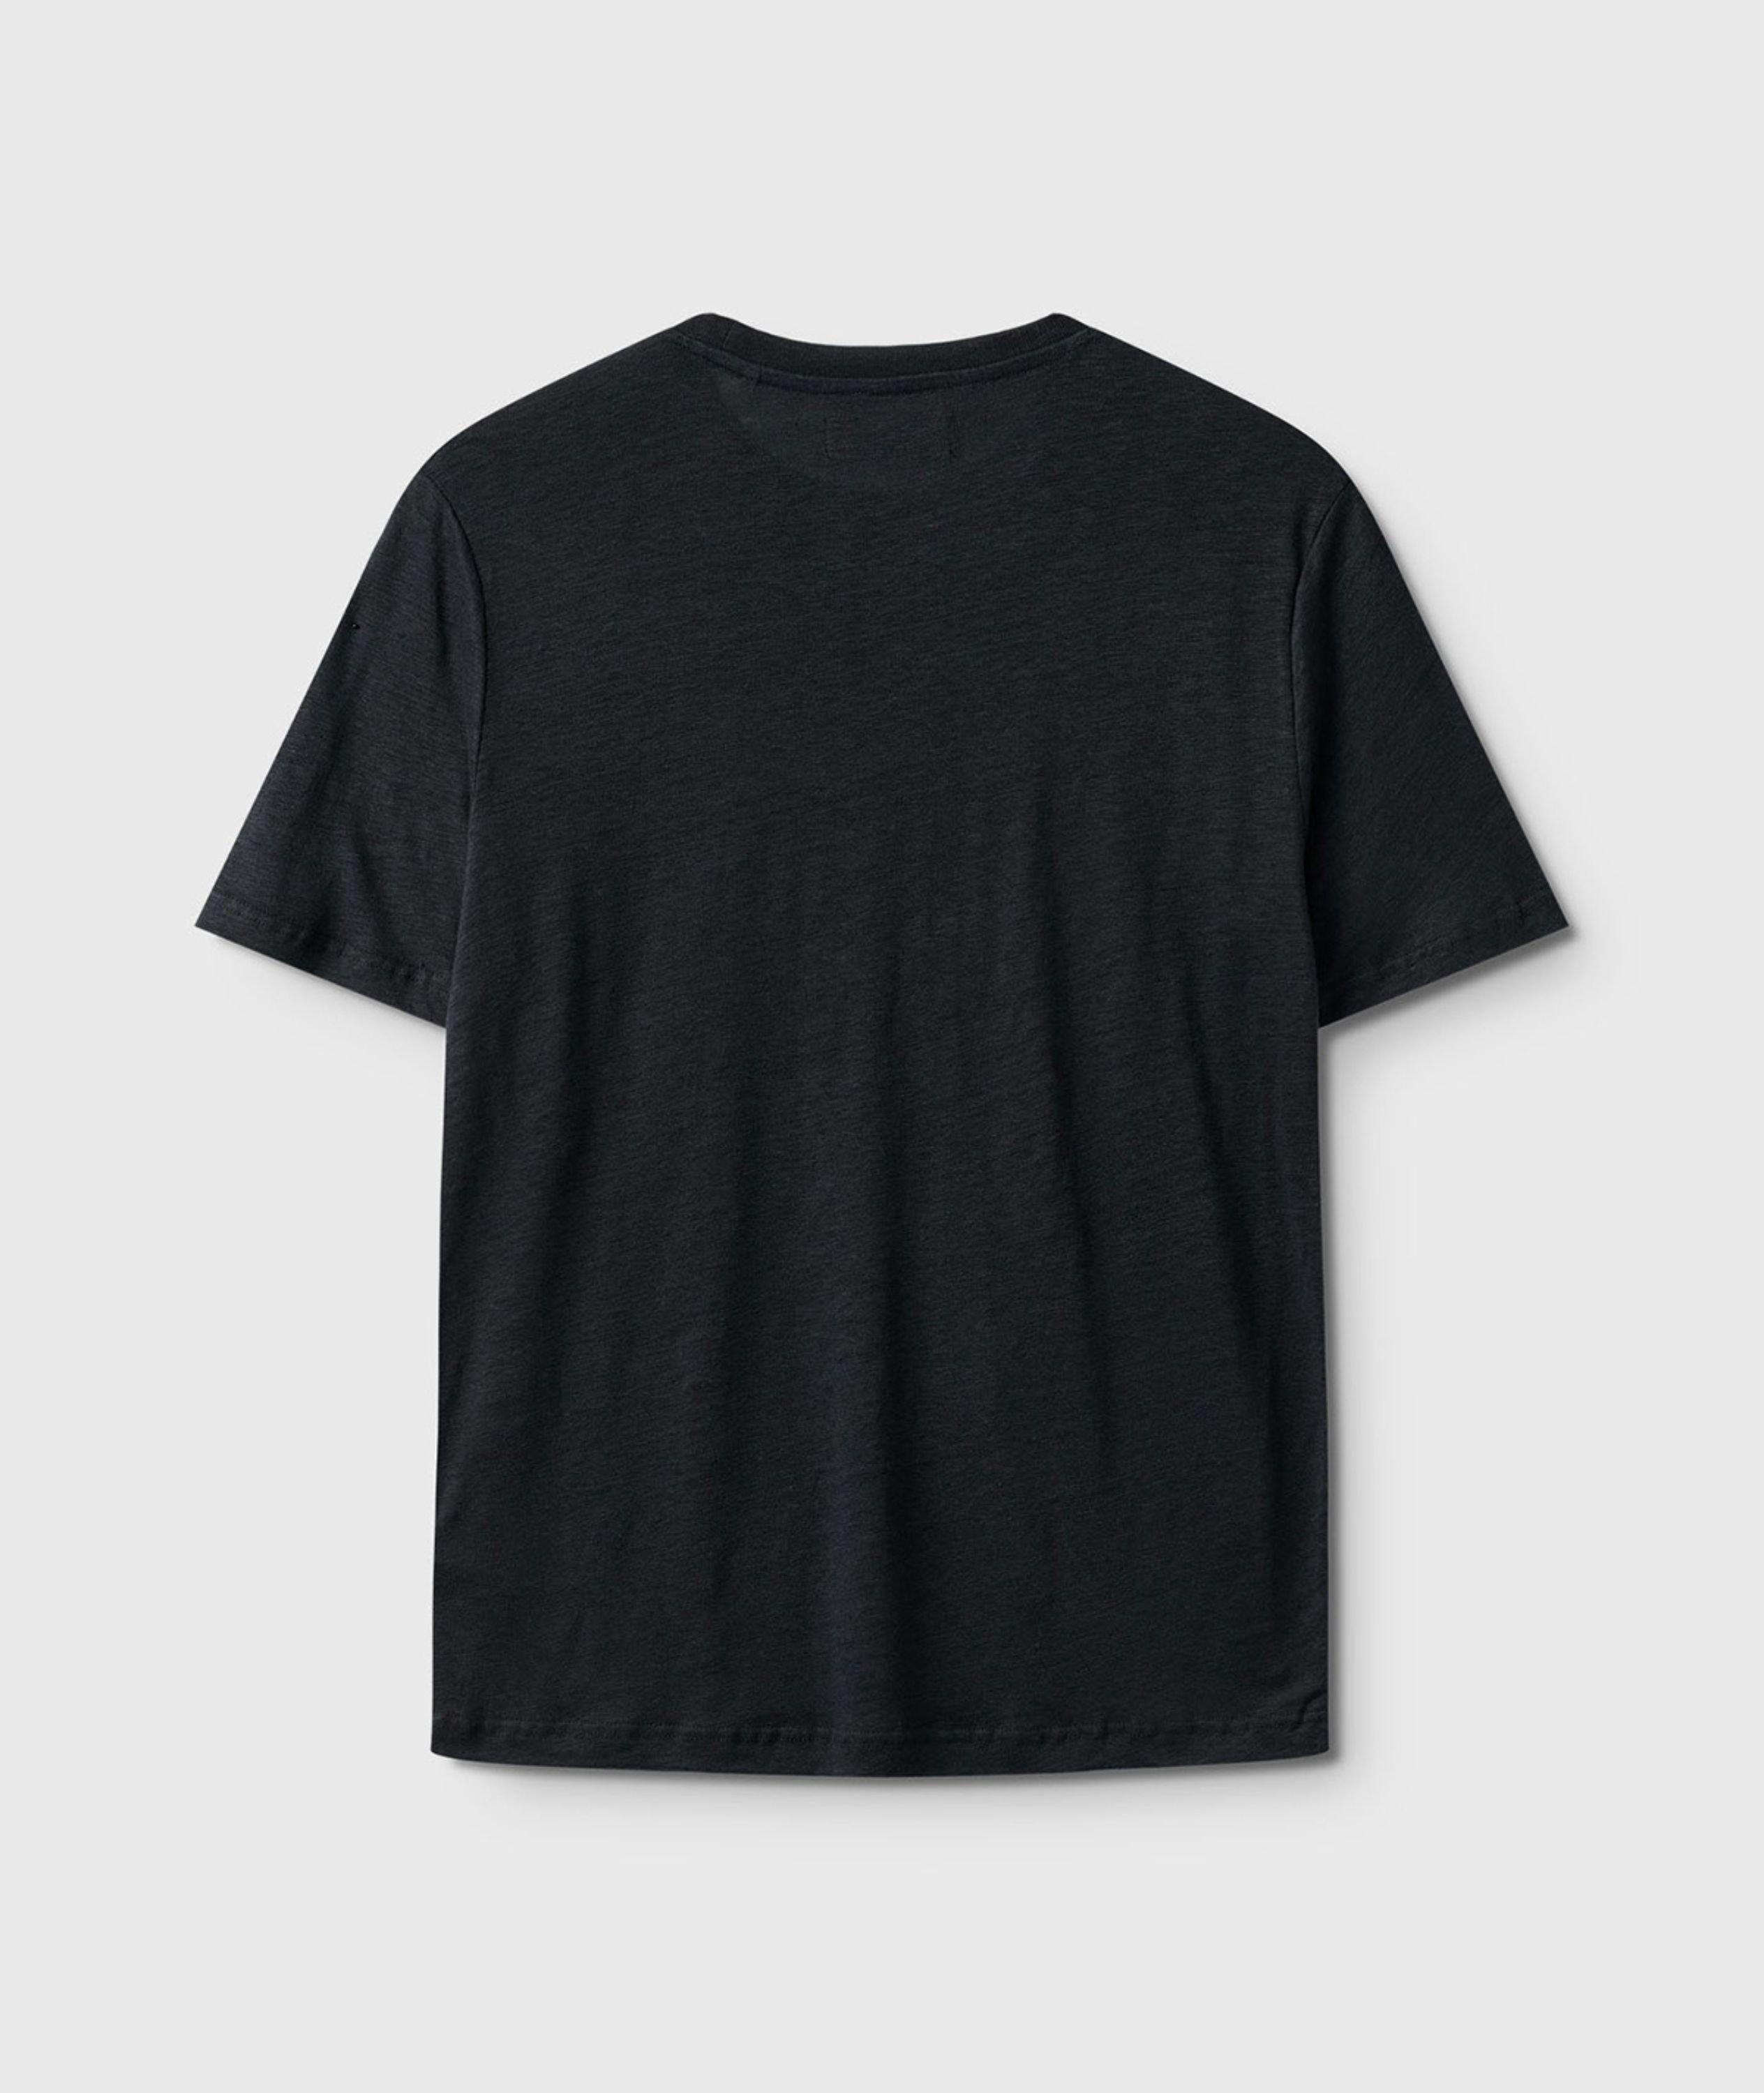 Duke Linen T-Shirt image 1